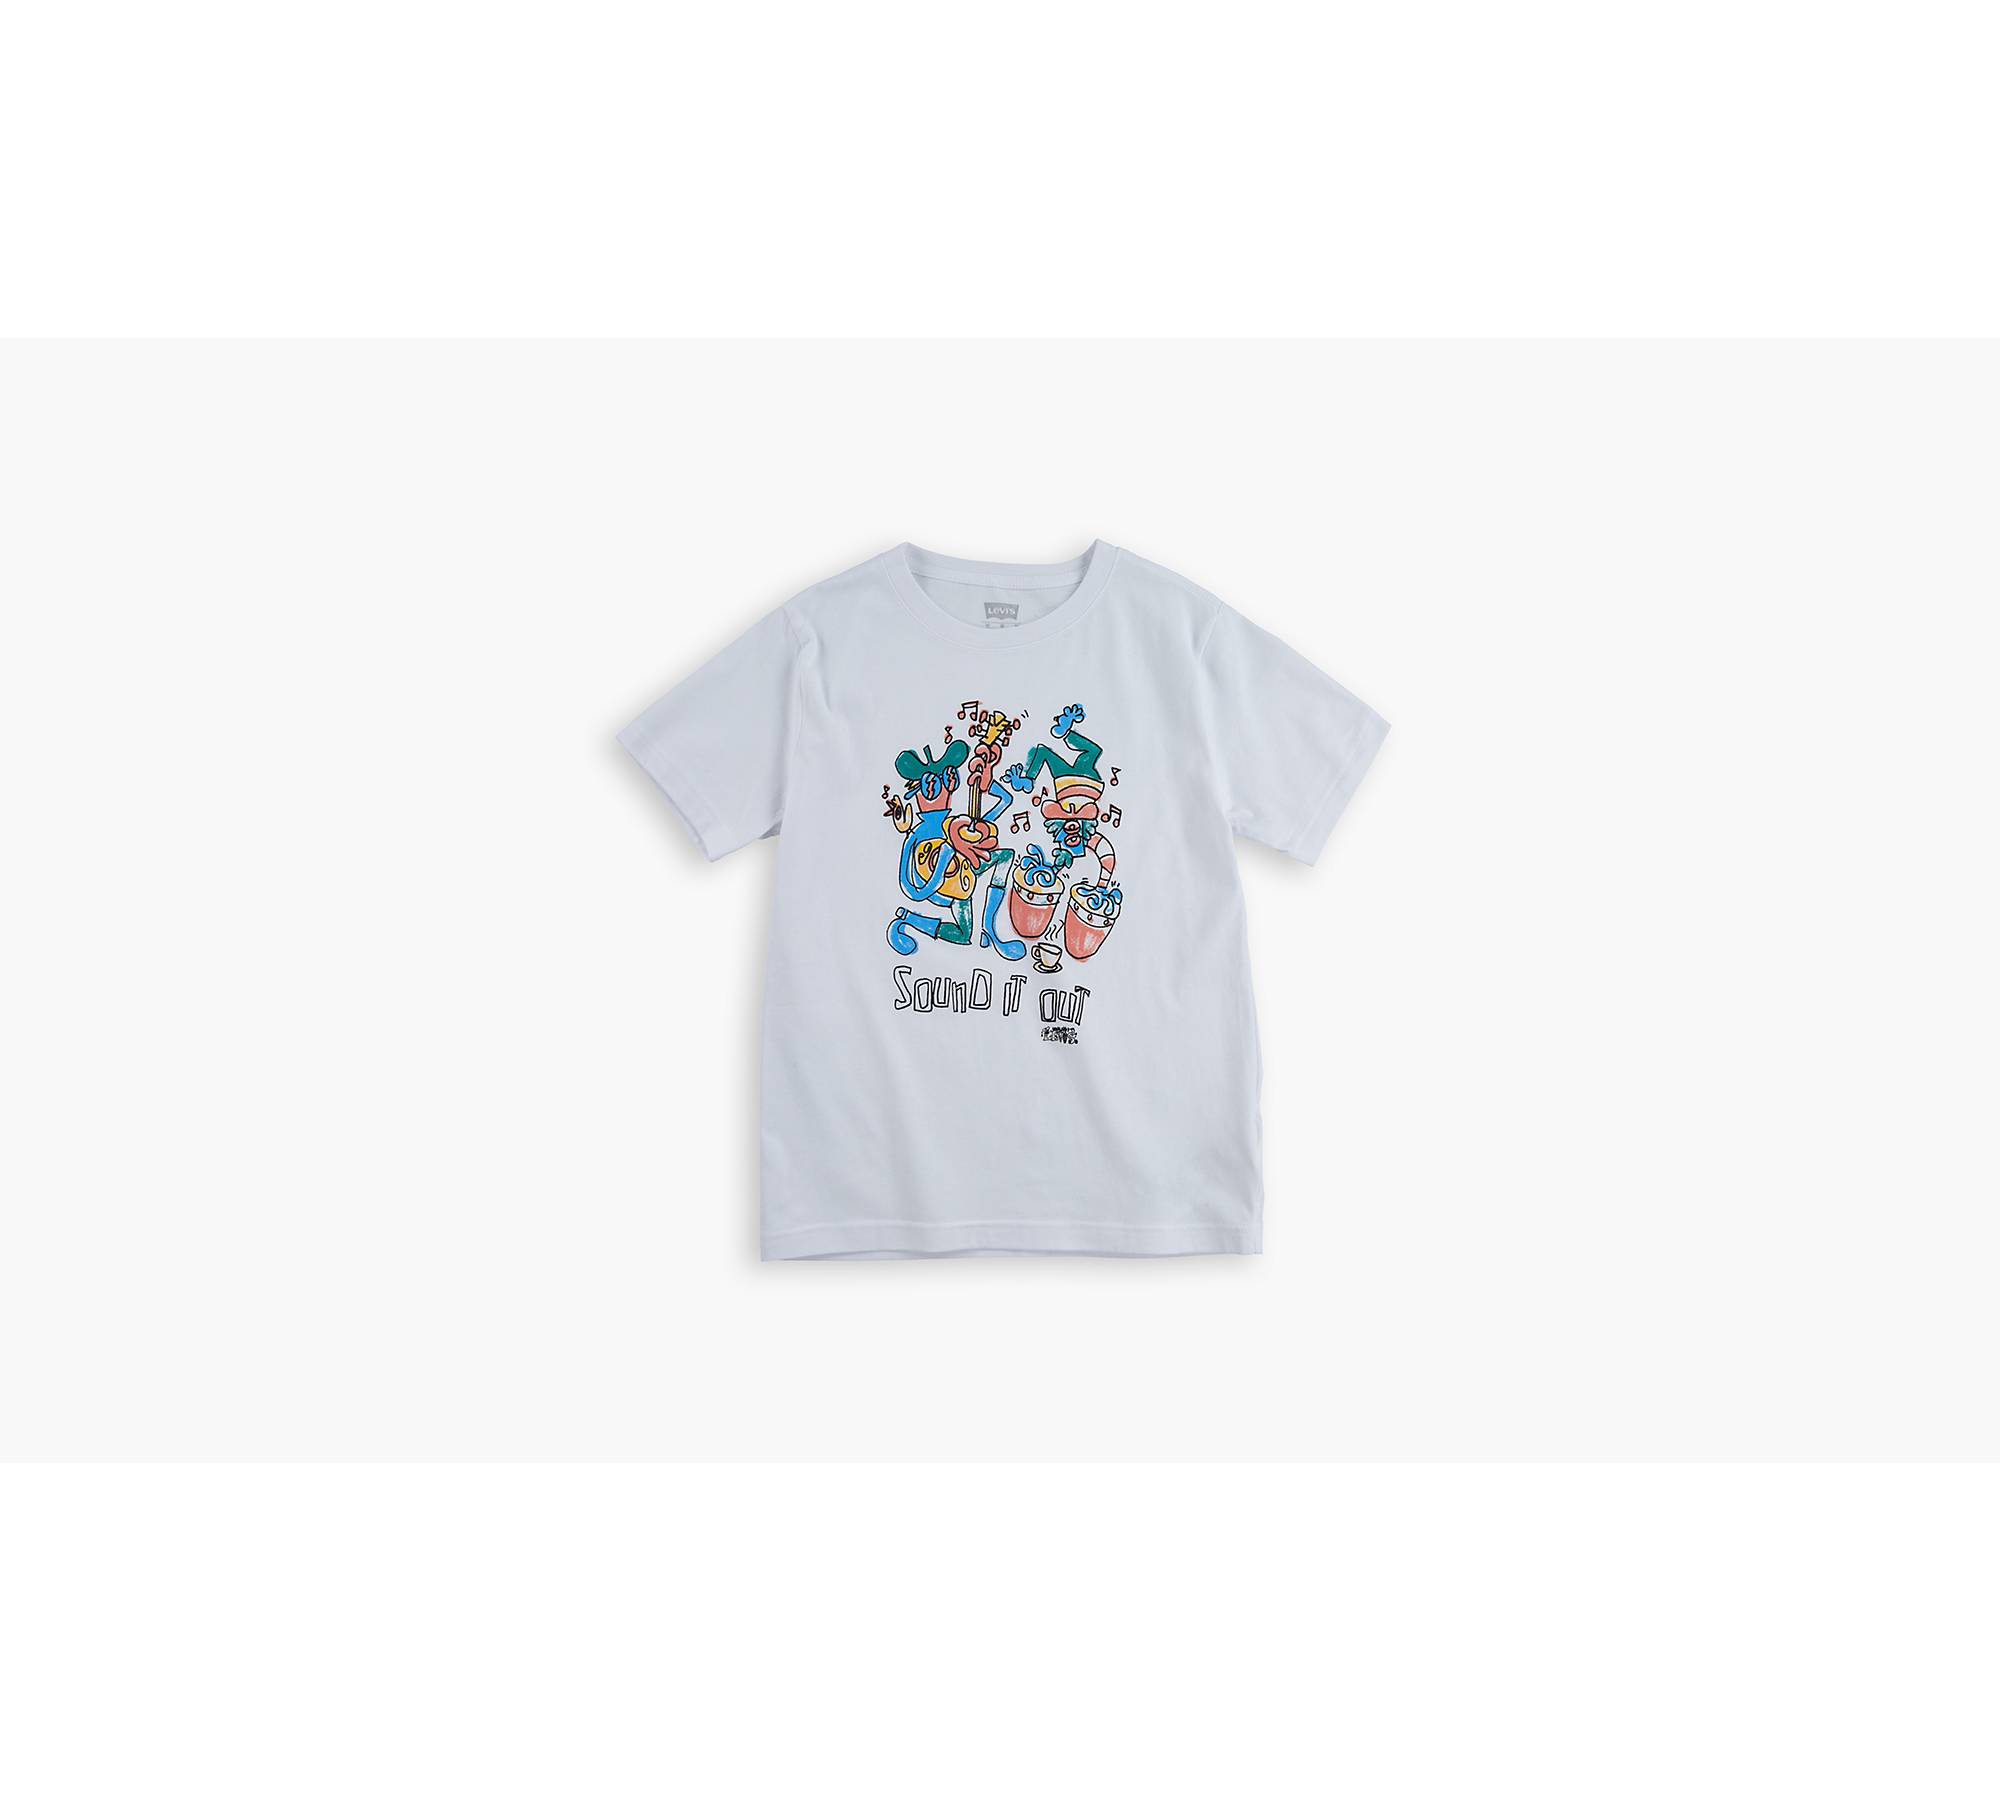 Little Boys 4-7 Graphic T-shirt - White | Levi's® US